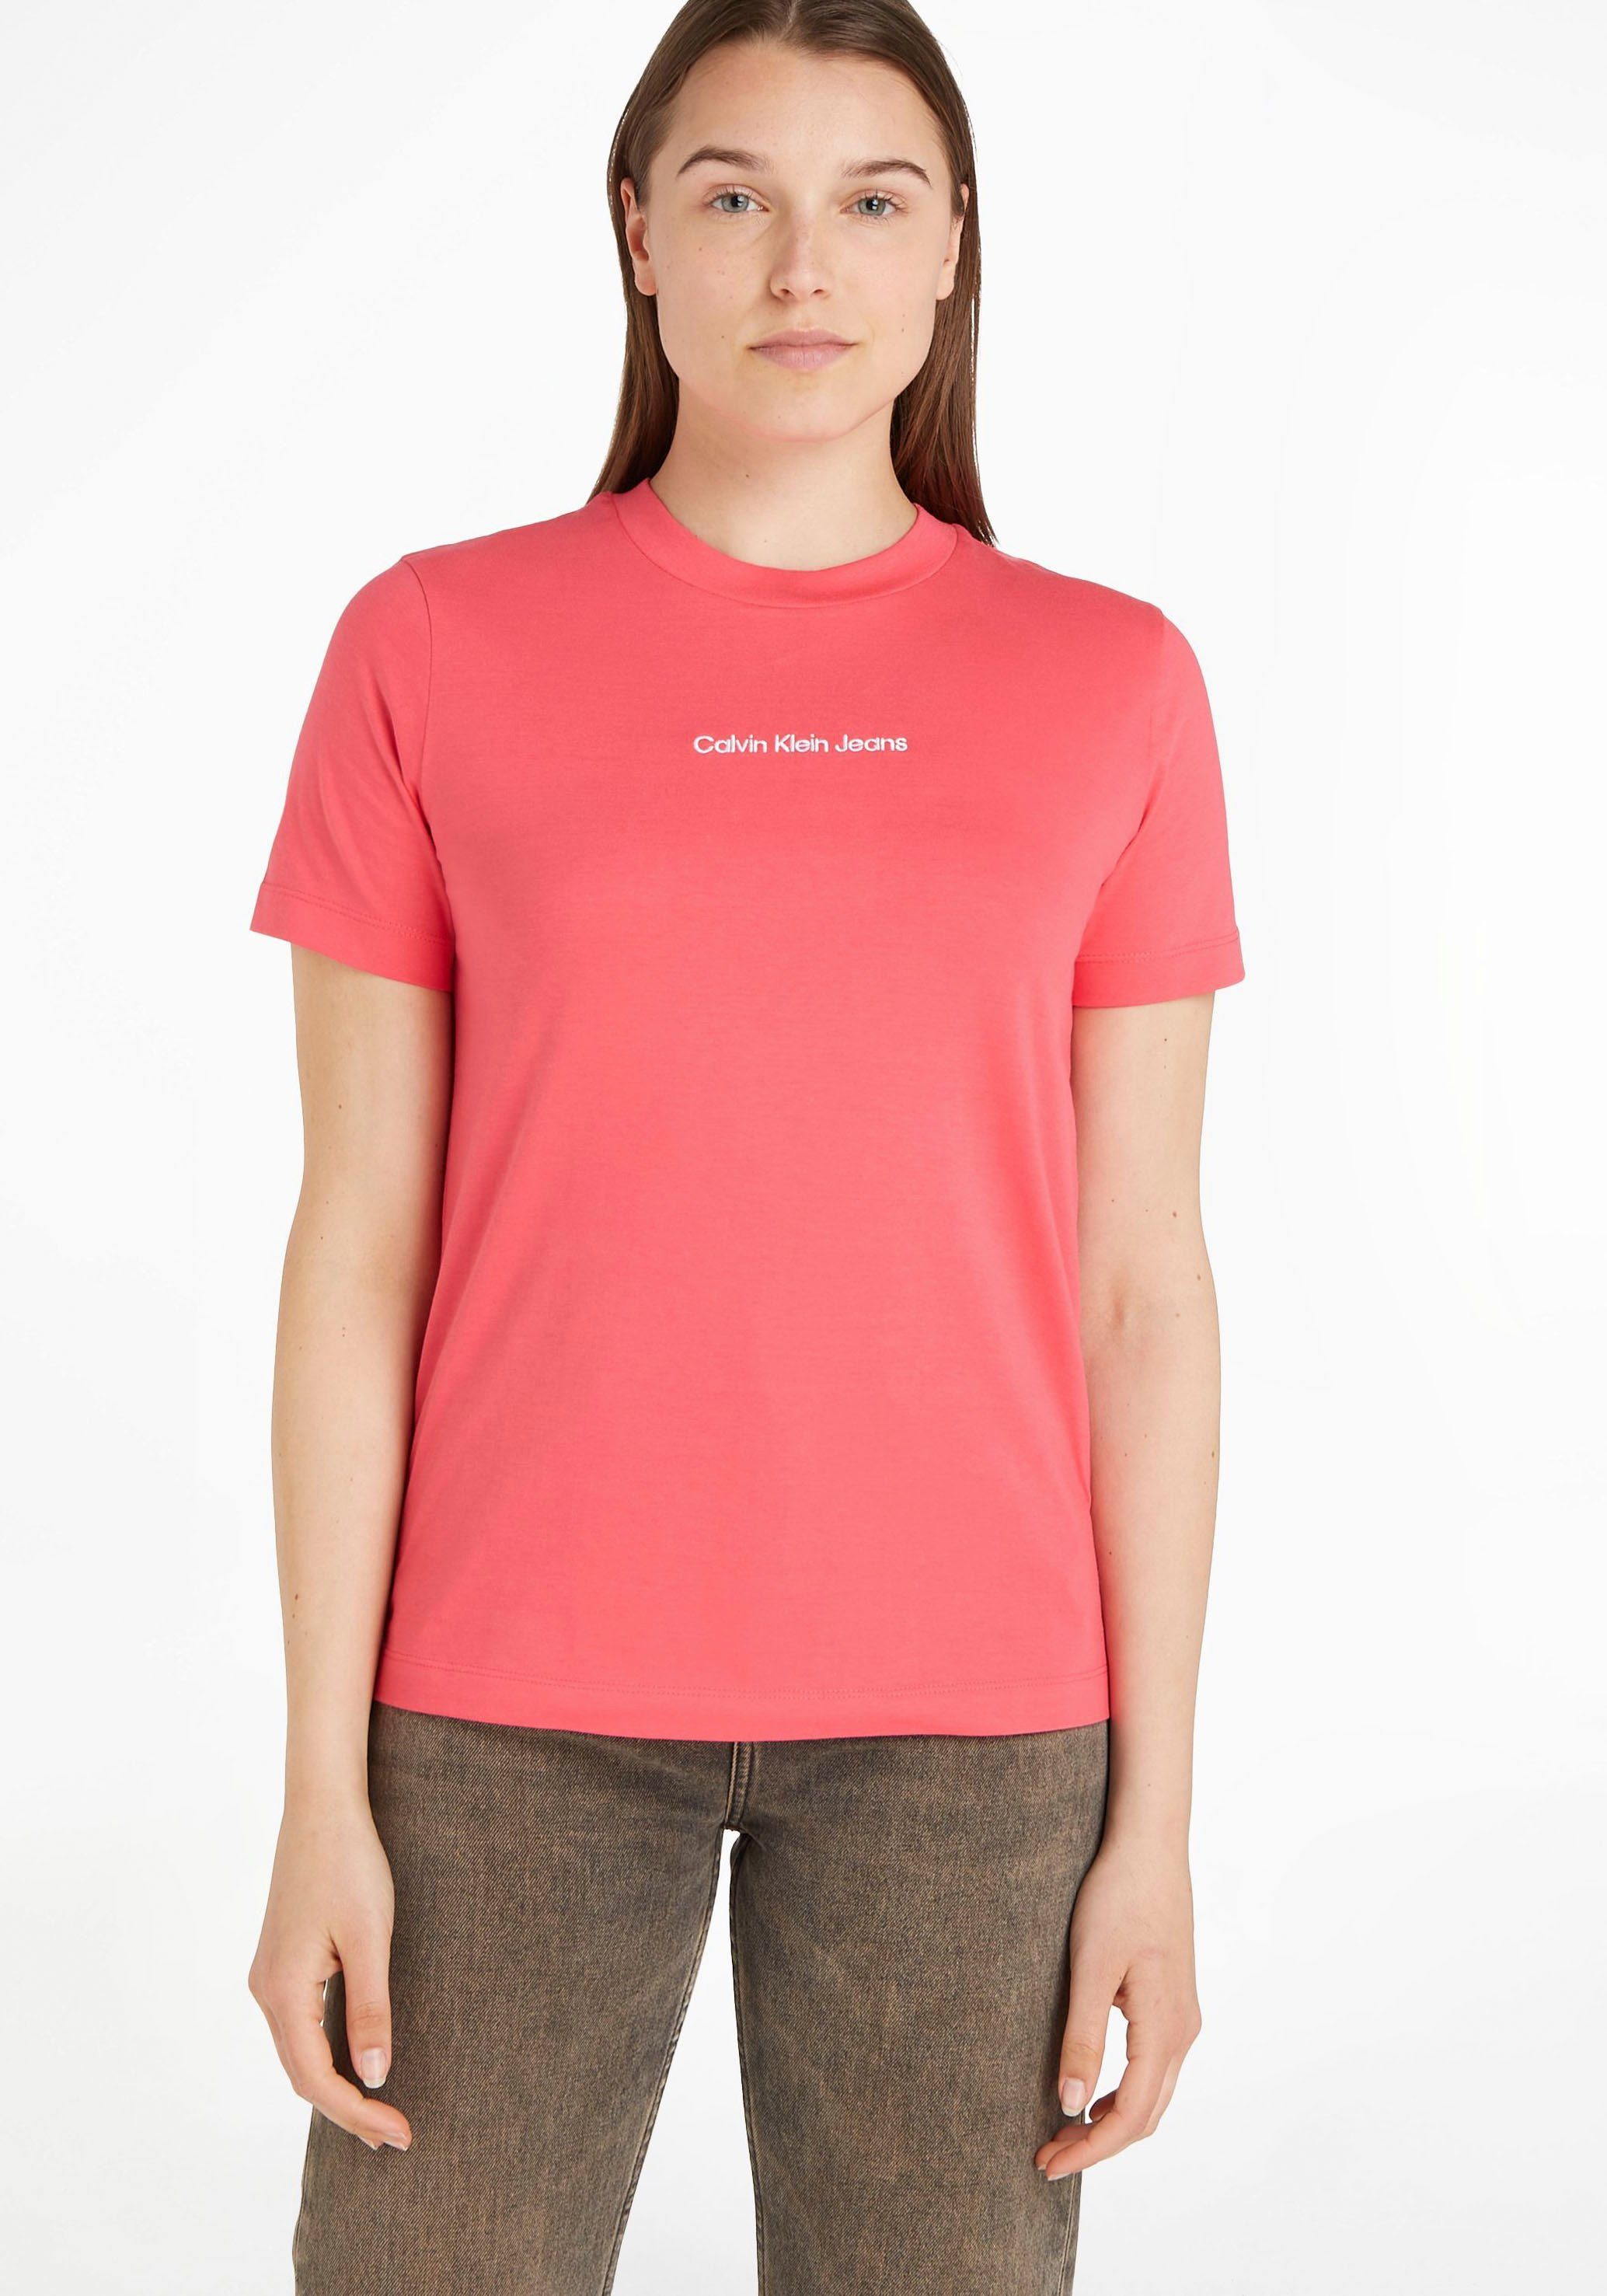 Calvin Klein Jeans T-Shirt Baumwolle pink aus reiner